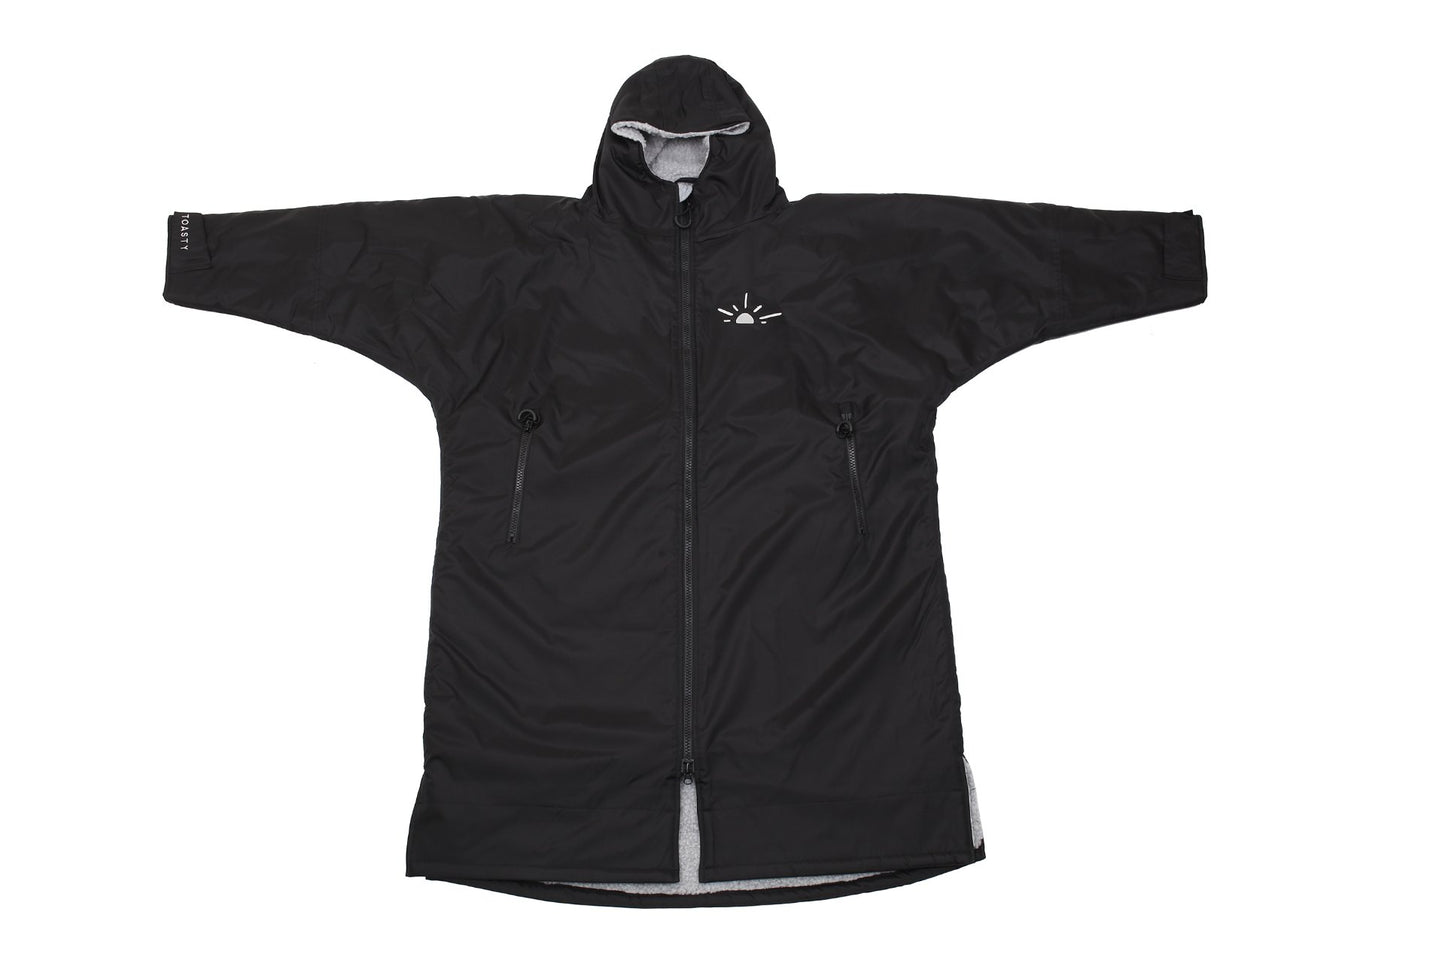 Black full length Toasty ultimate changing jacket / robe  zipped up